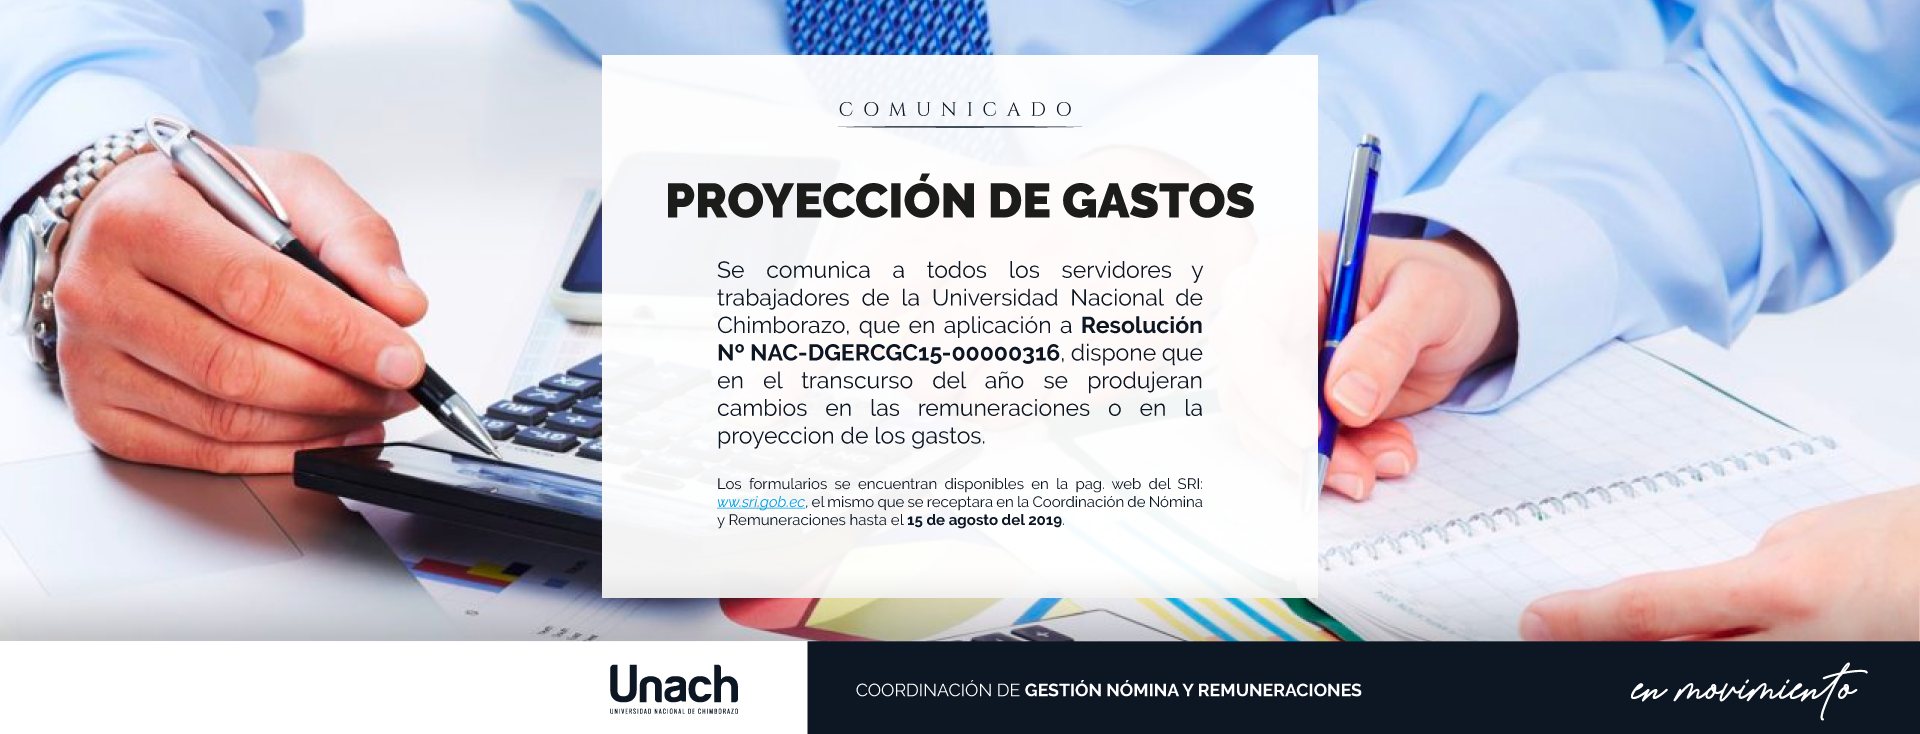 PROYECCION DE GASTOS